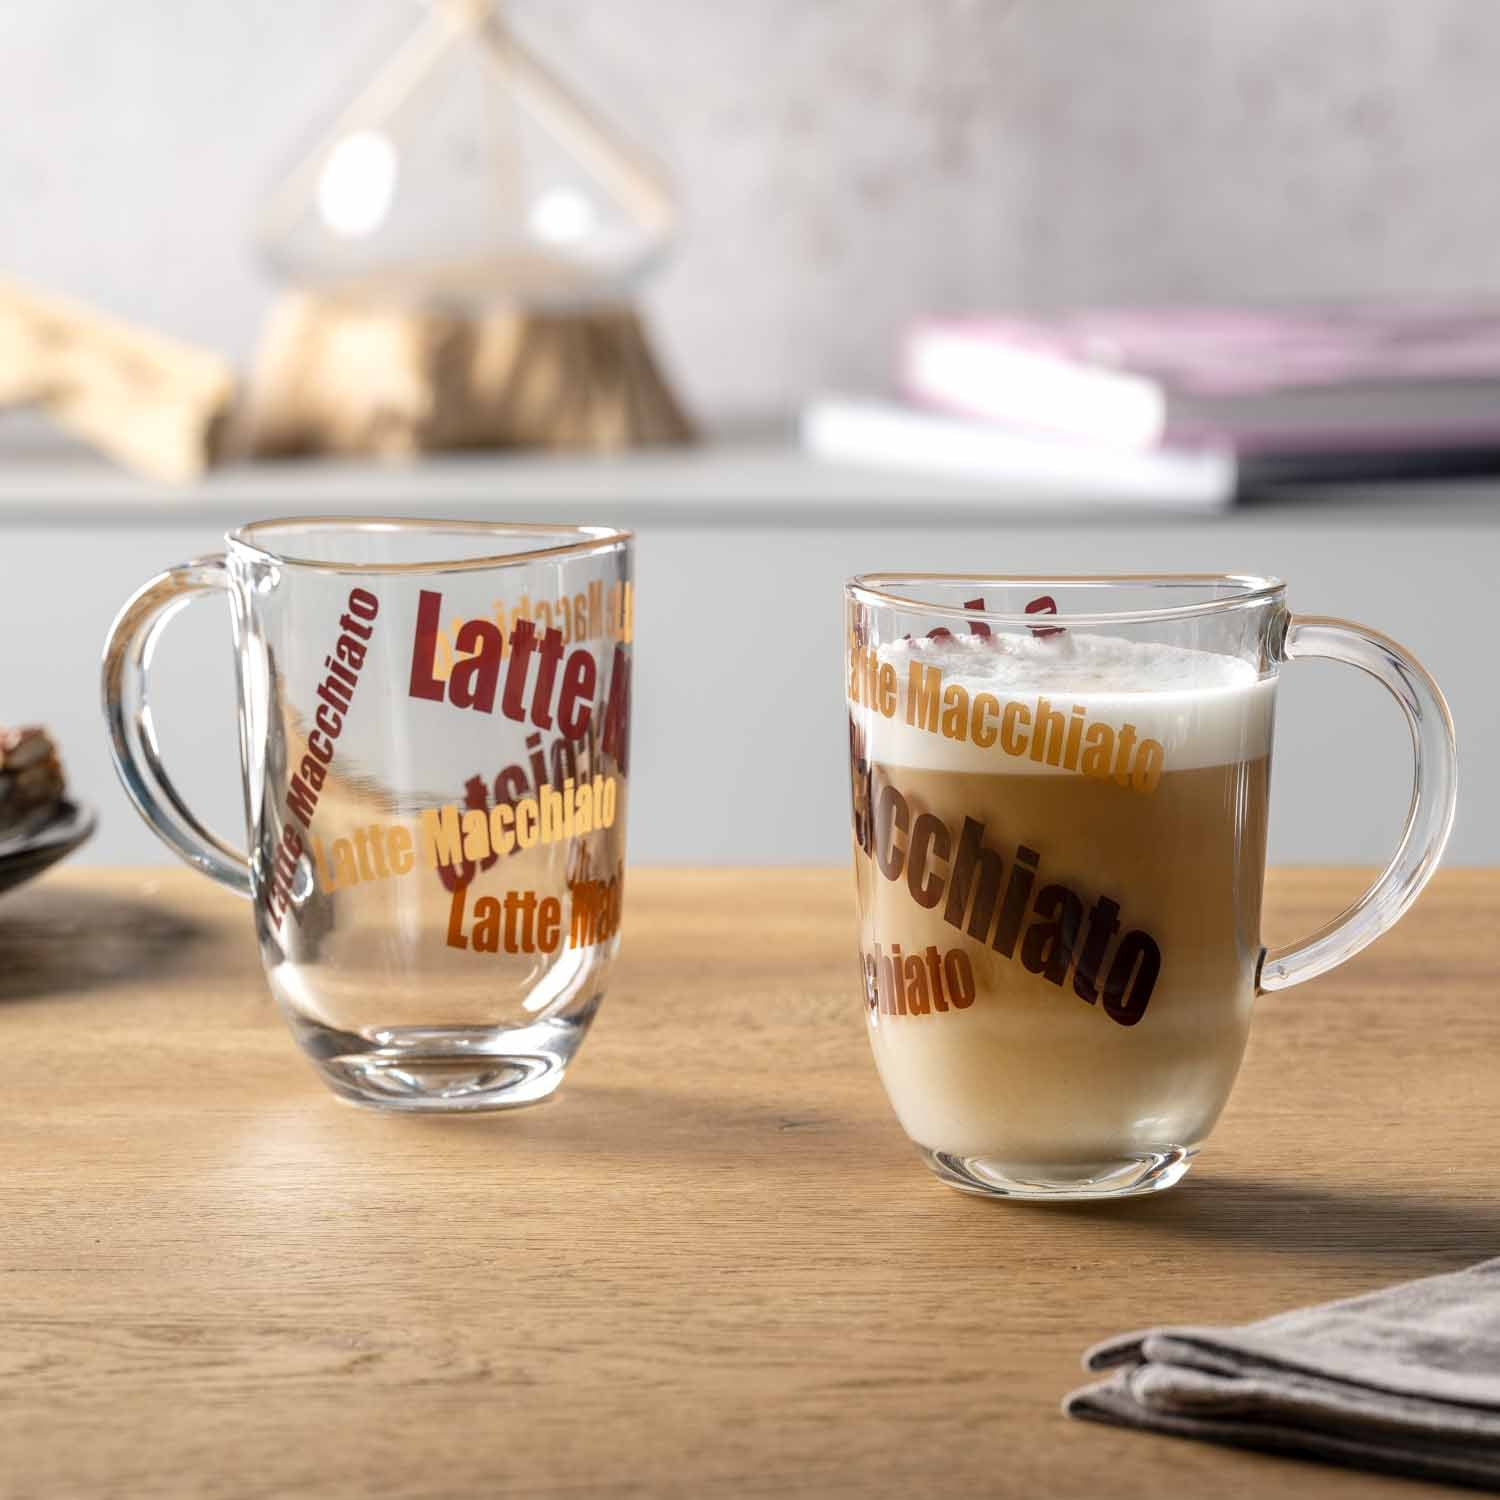 Acheter en ligne LEONARDO Tasse à latte macchiato (370 ml) à bons prix et  en toute sécurité 